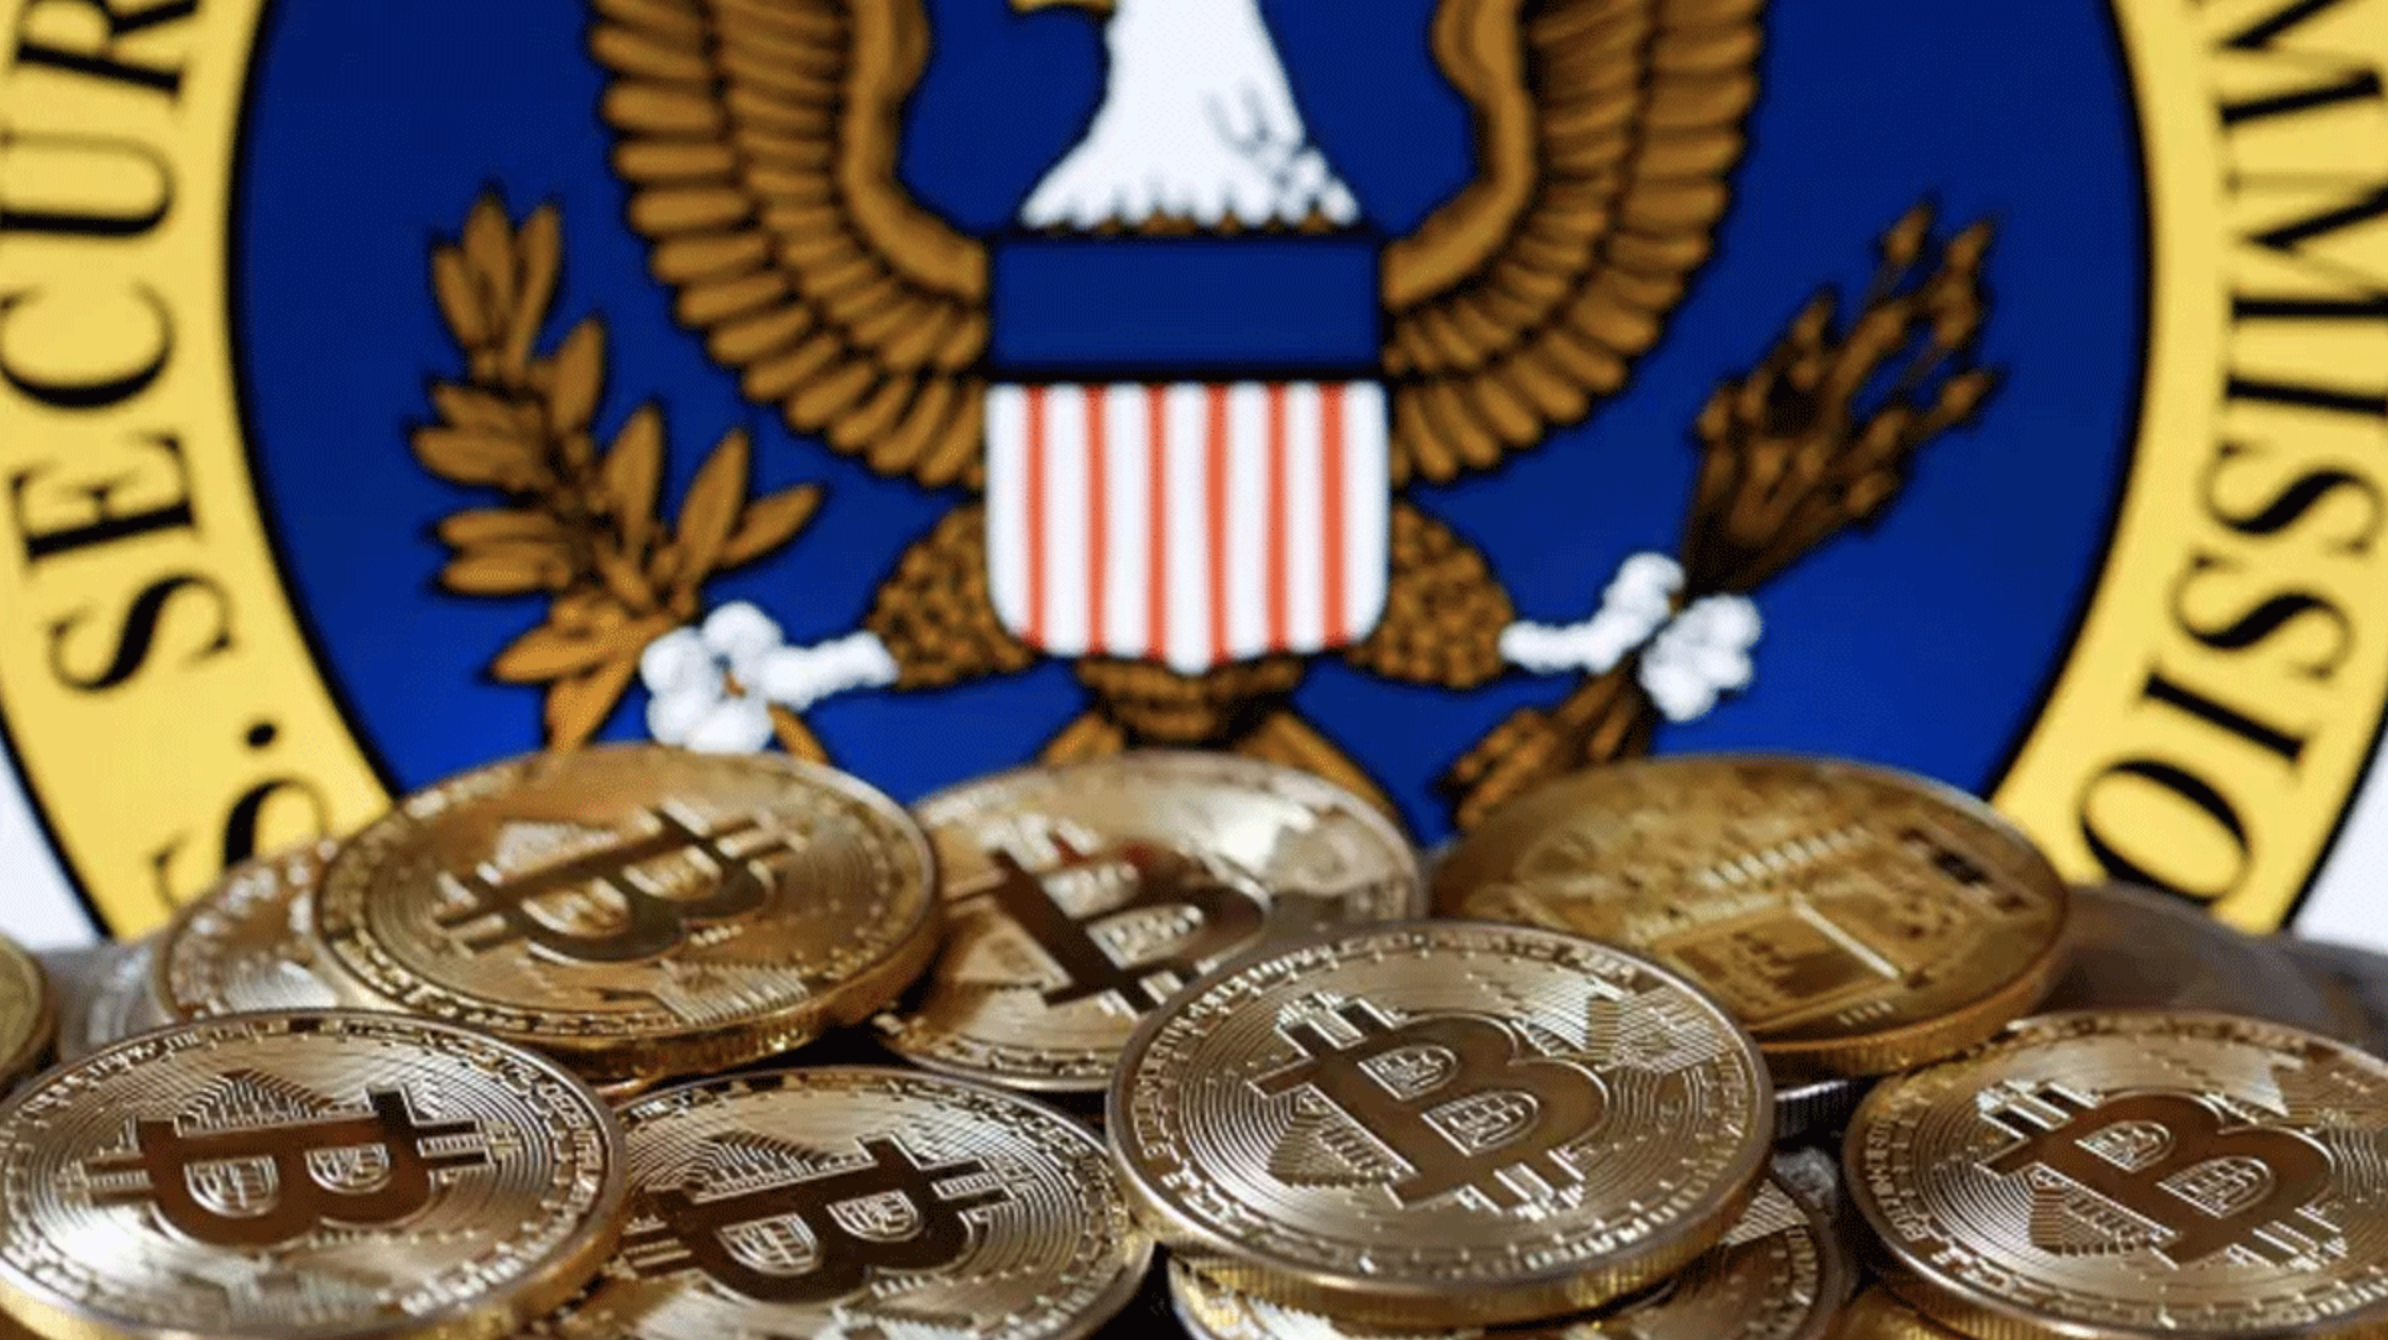 Được vào sân chơi chính thống, giá Bitcoin sẽ tăng lên 12 tỷ đồng?